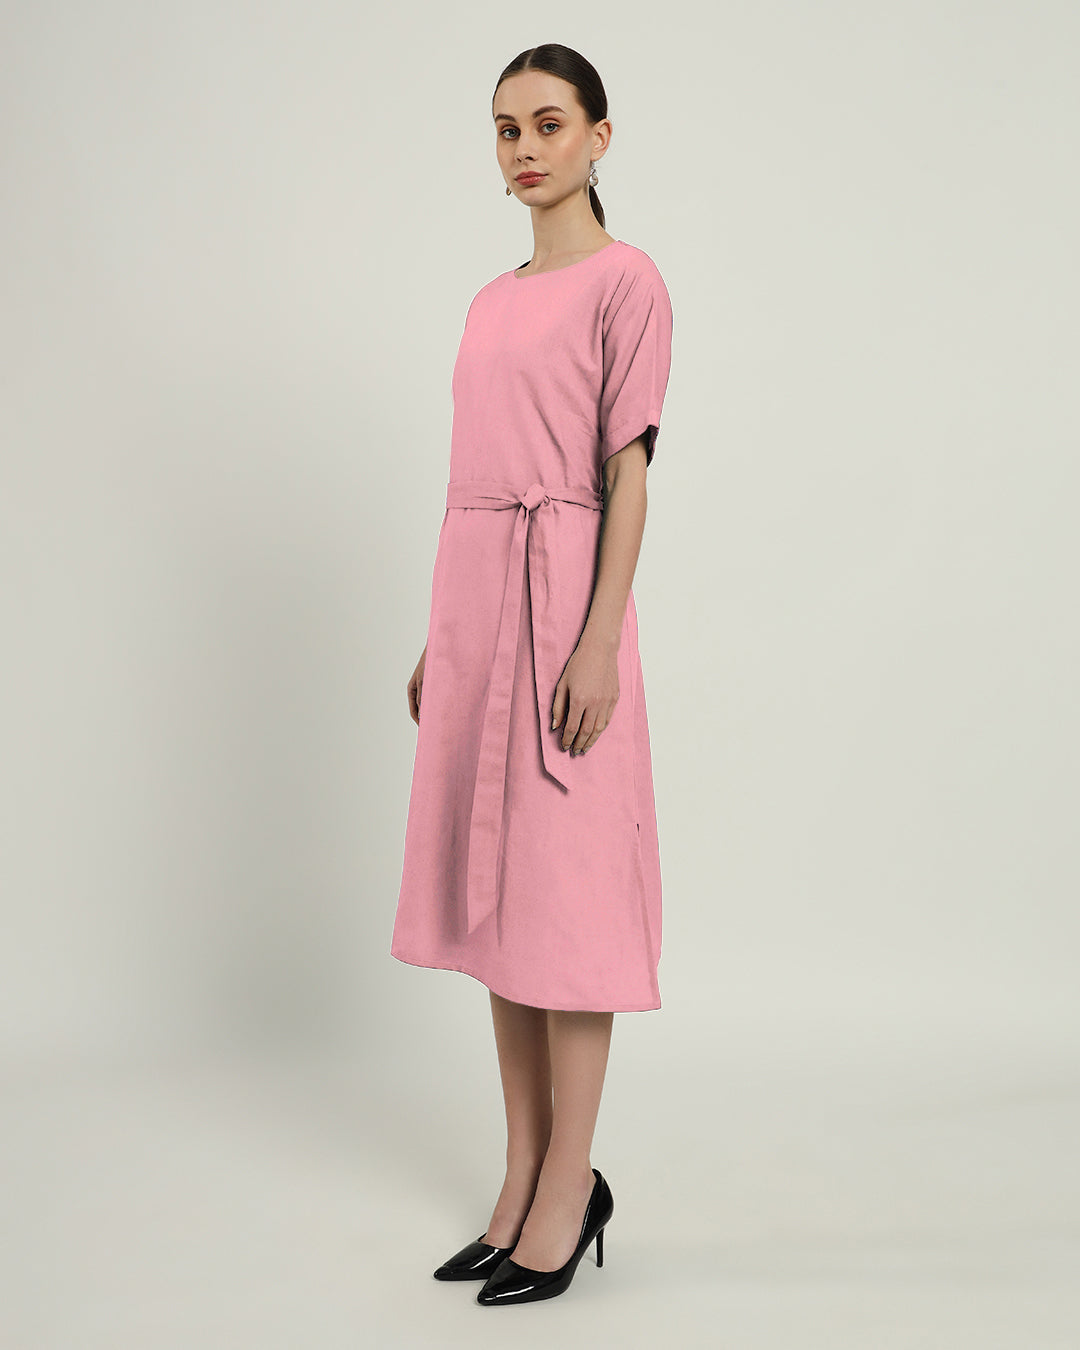 The Tayma Fondant Pink Cotton Dress